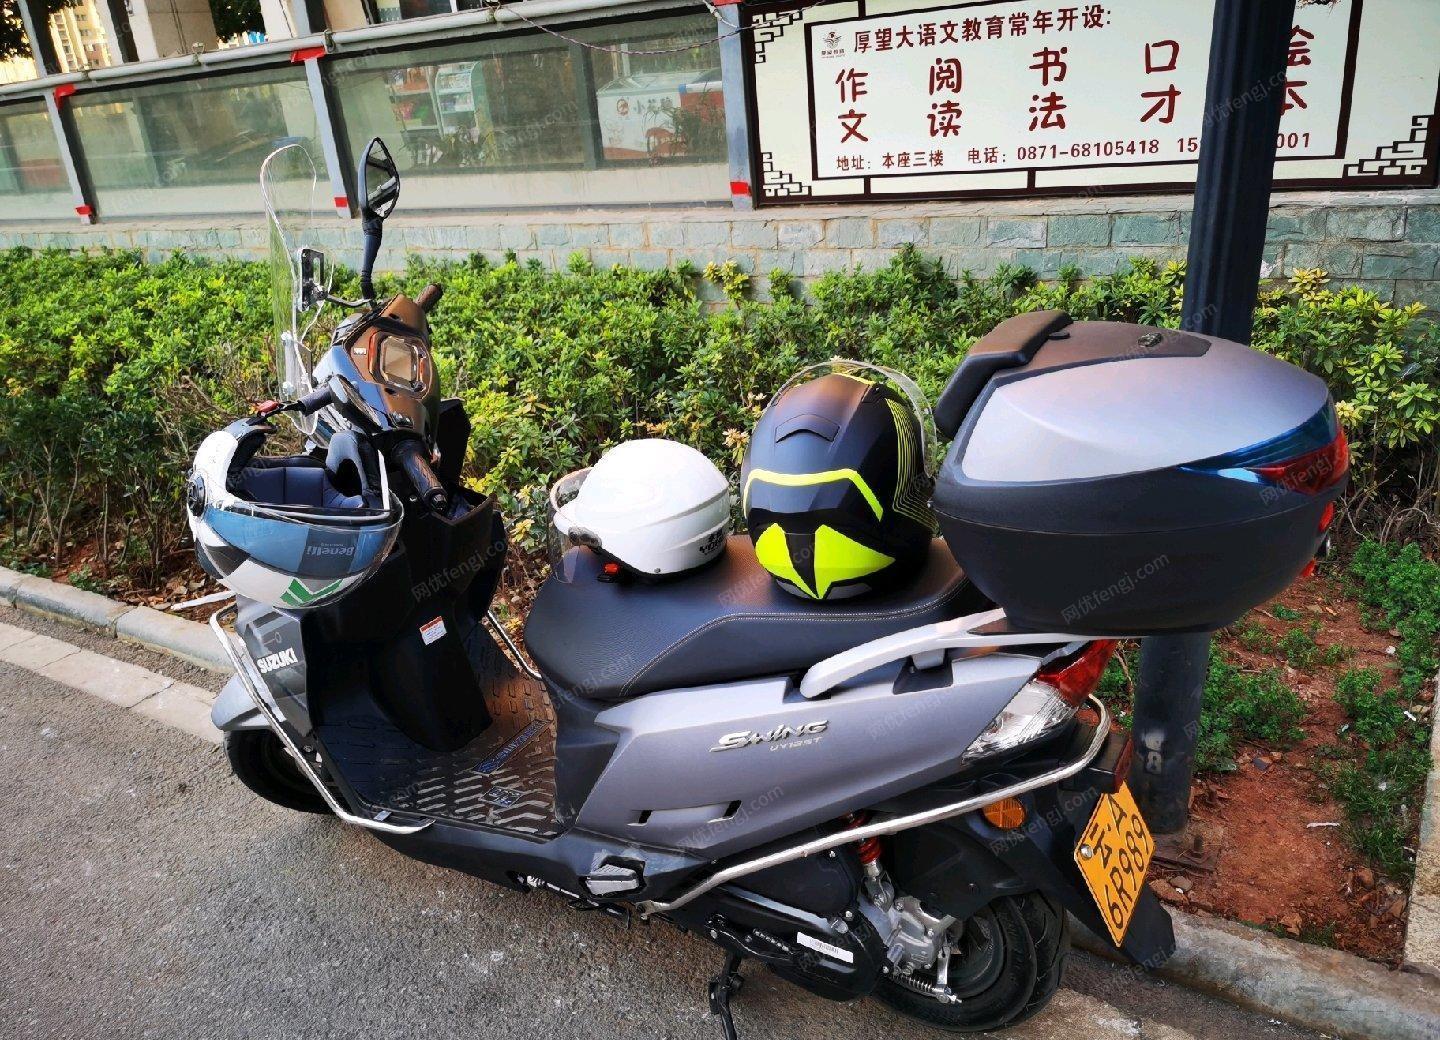 云南昆明精品uy125摩托车出售